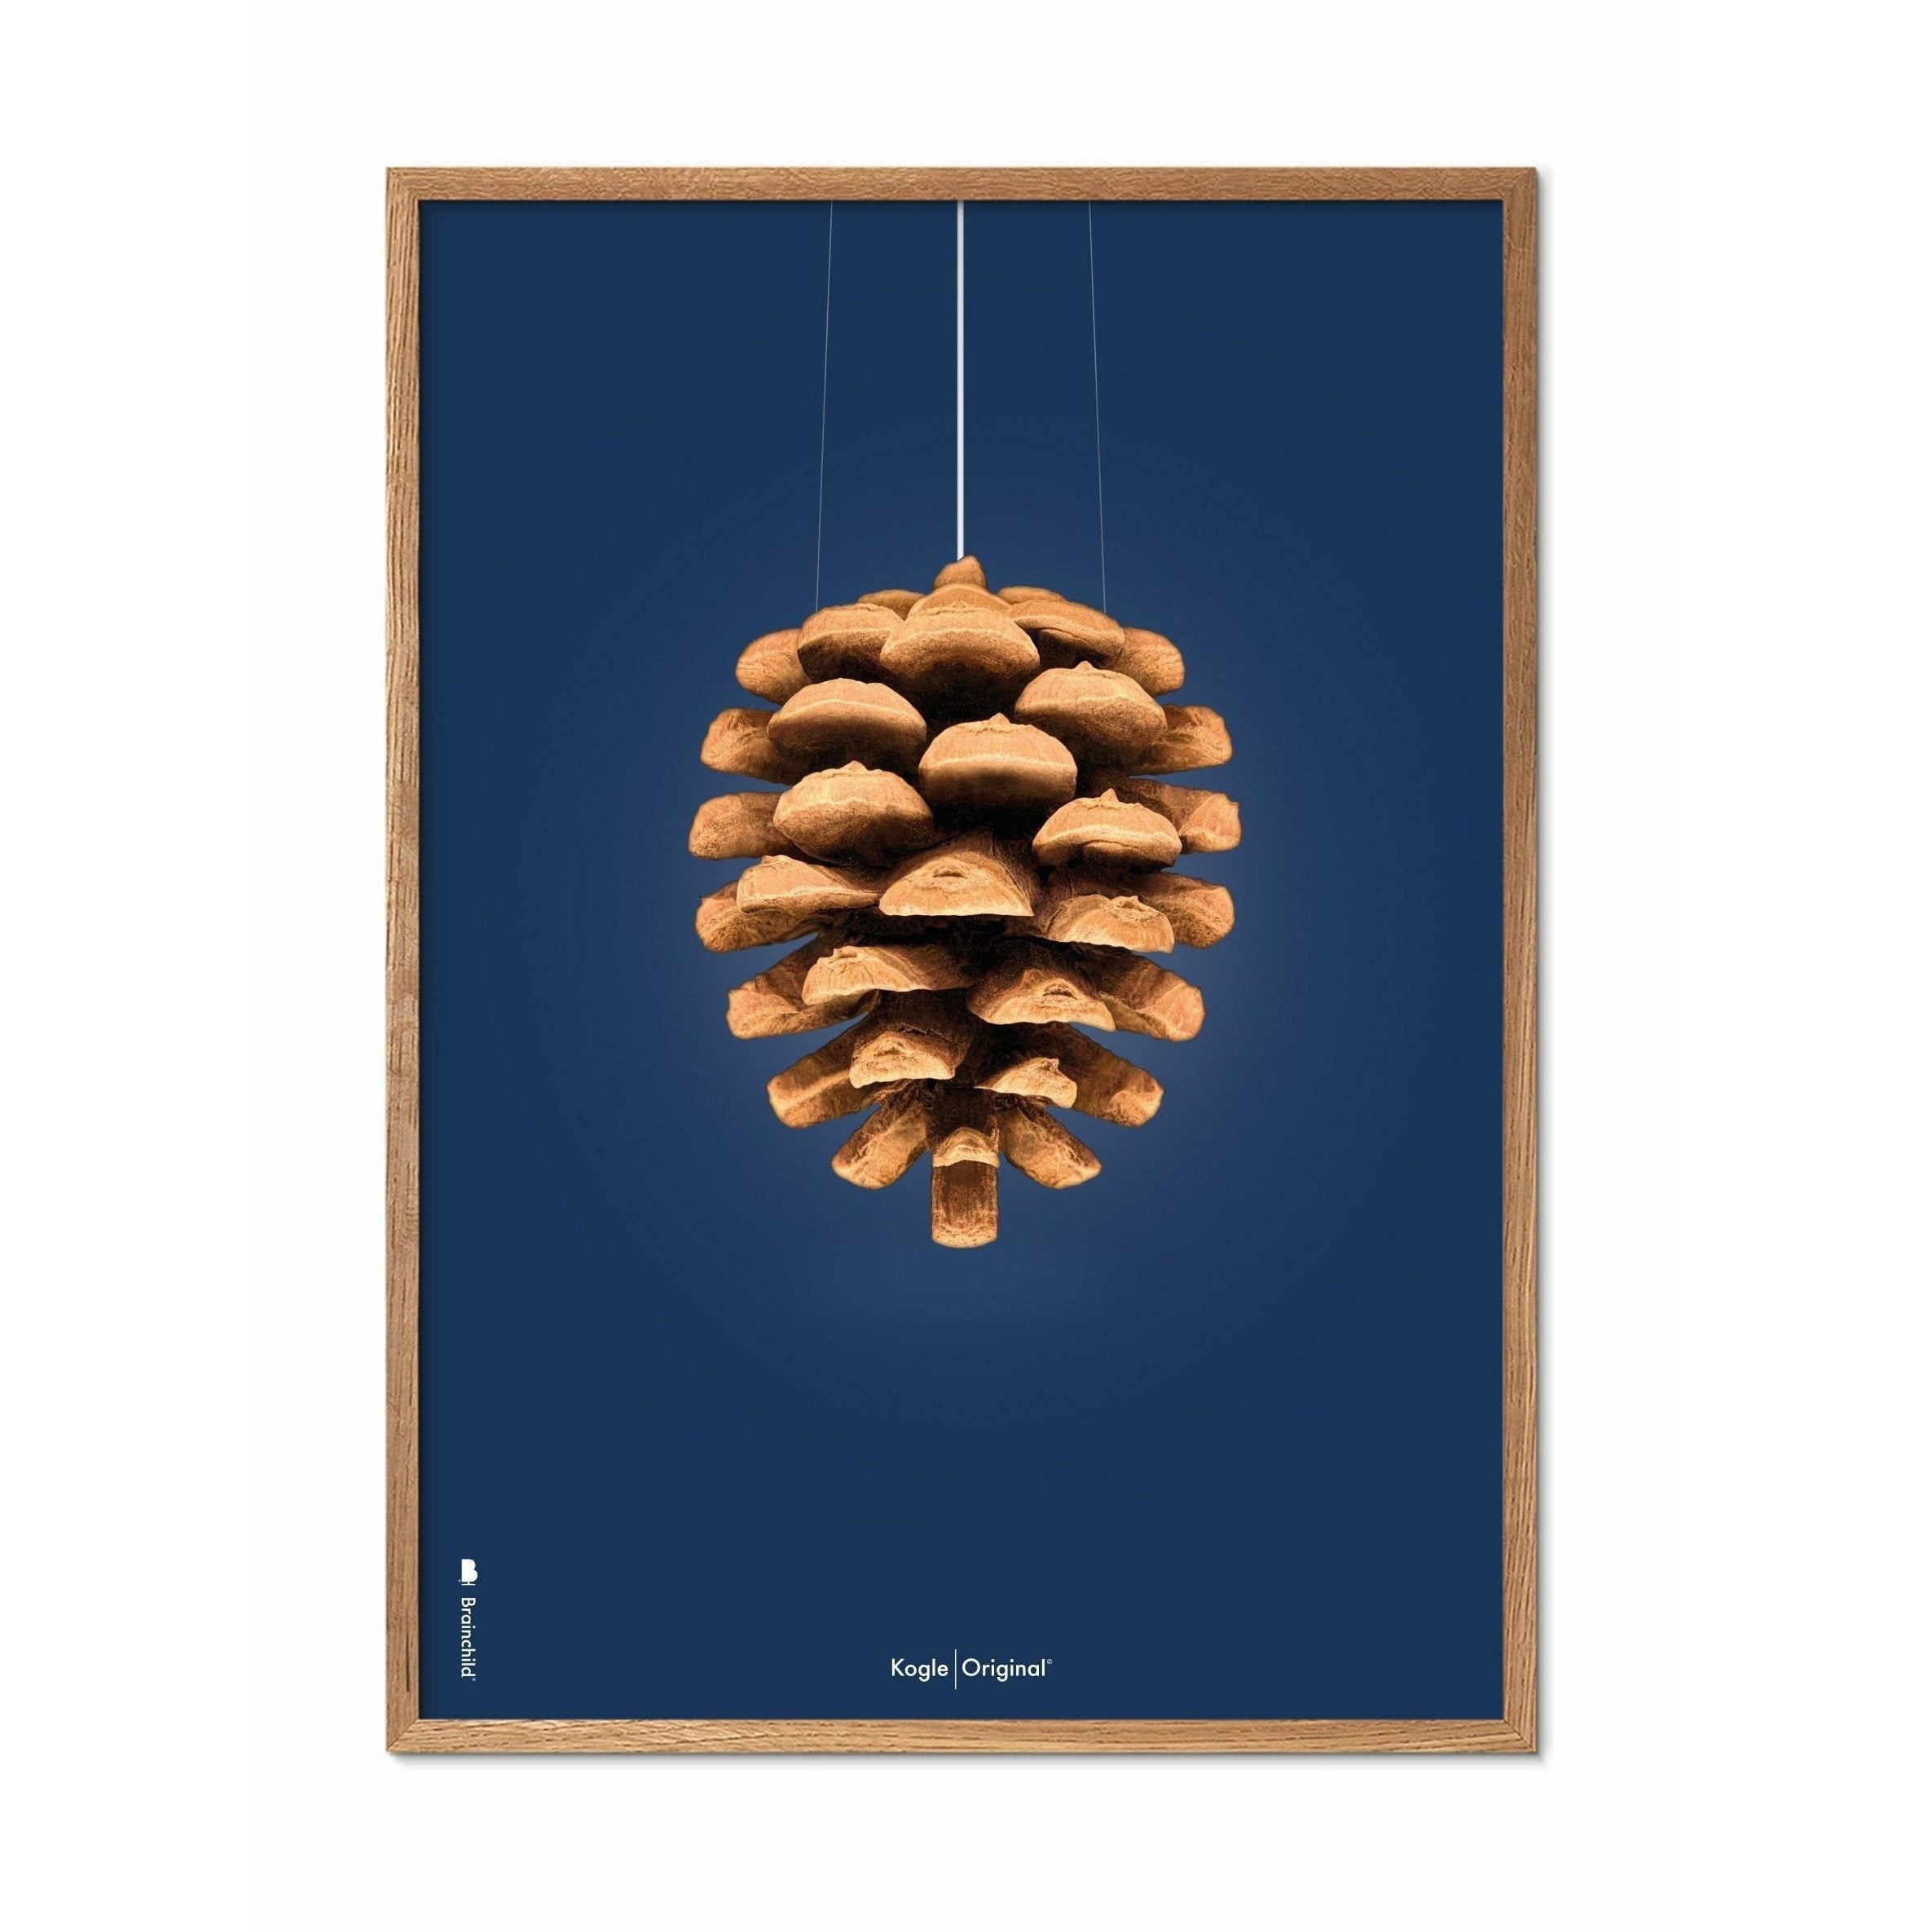 Póster clásico de cono de pino de creación, marco hecho de madera clara de 70x100 cm, fondo azul oscuro